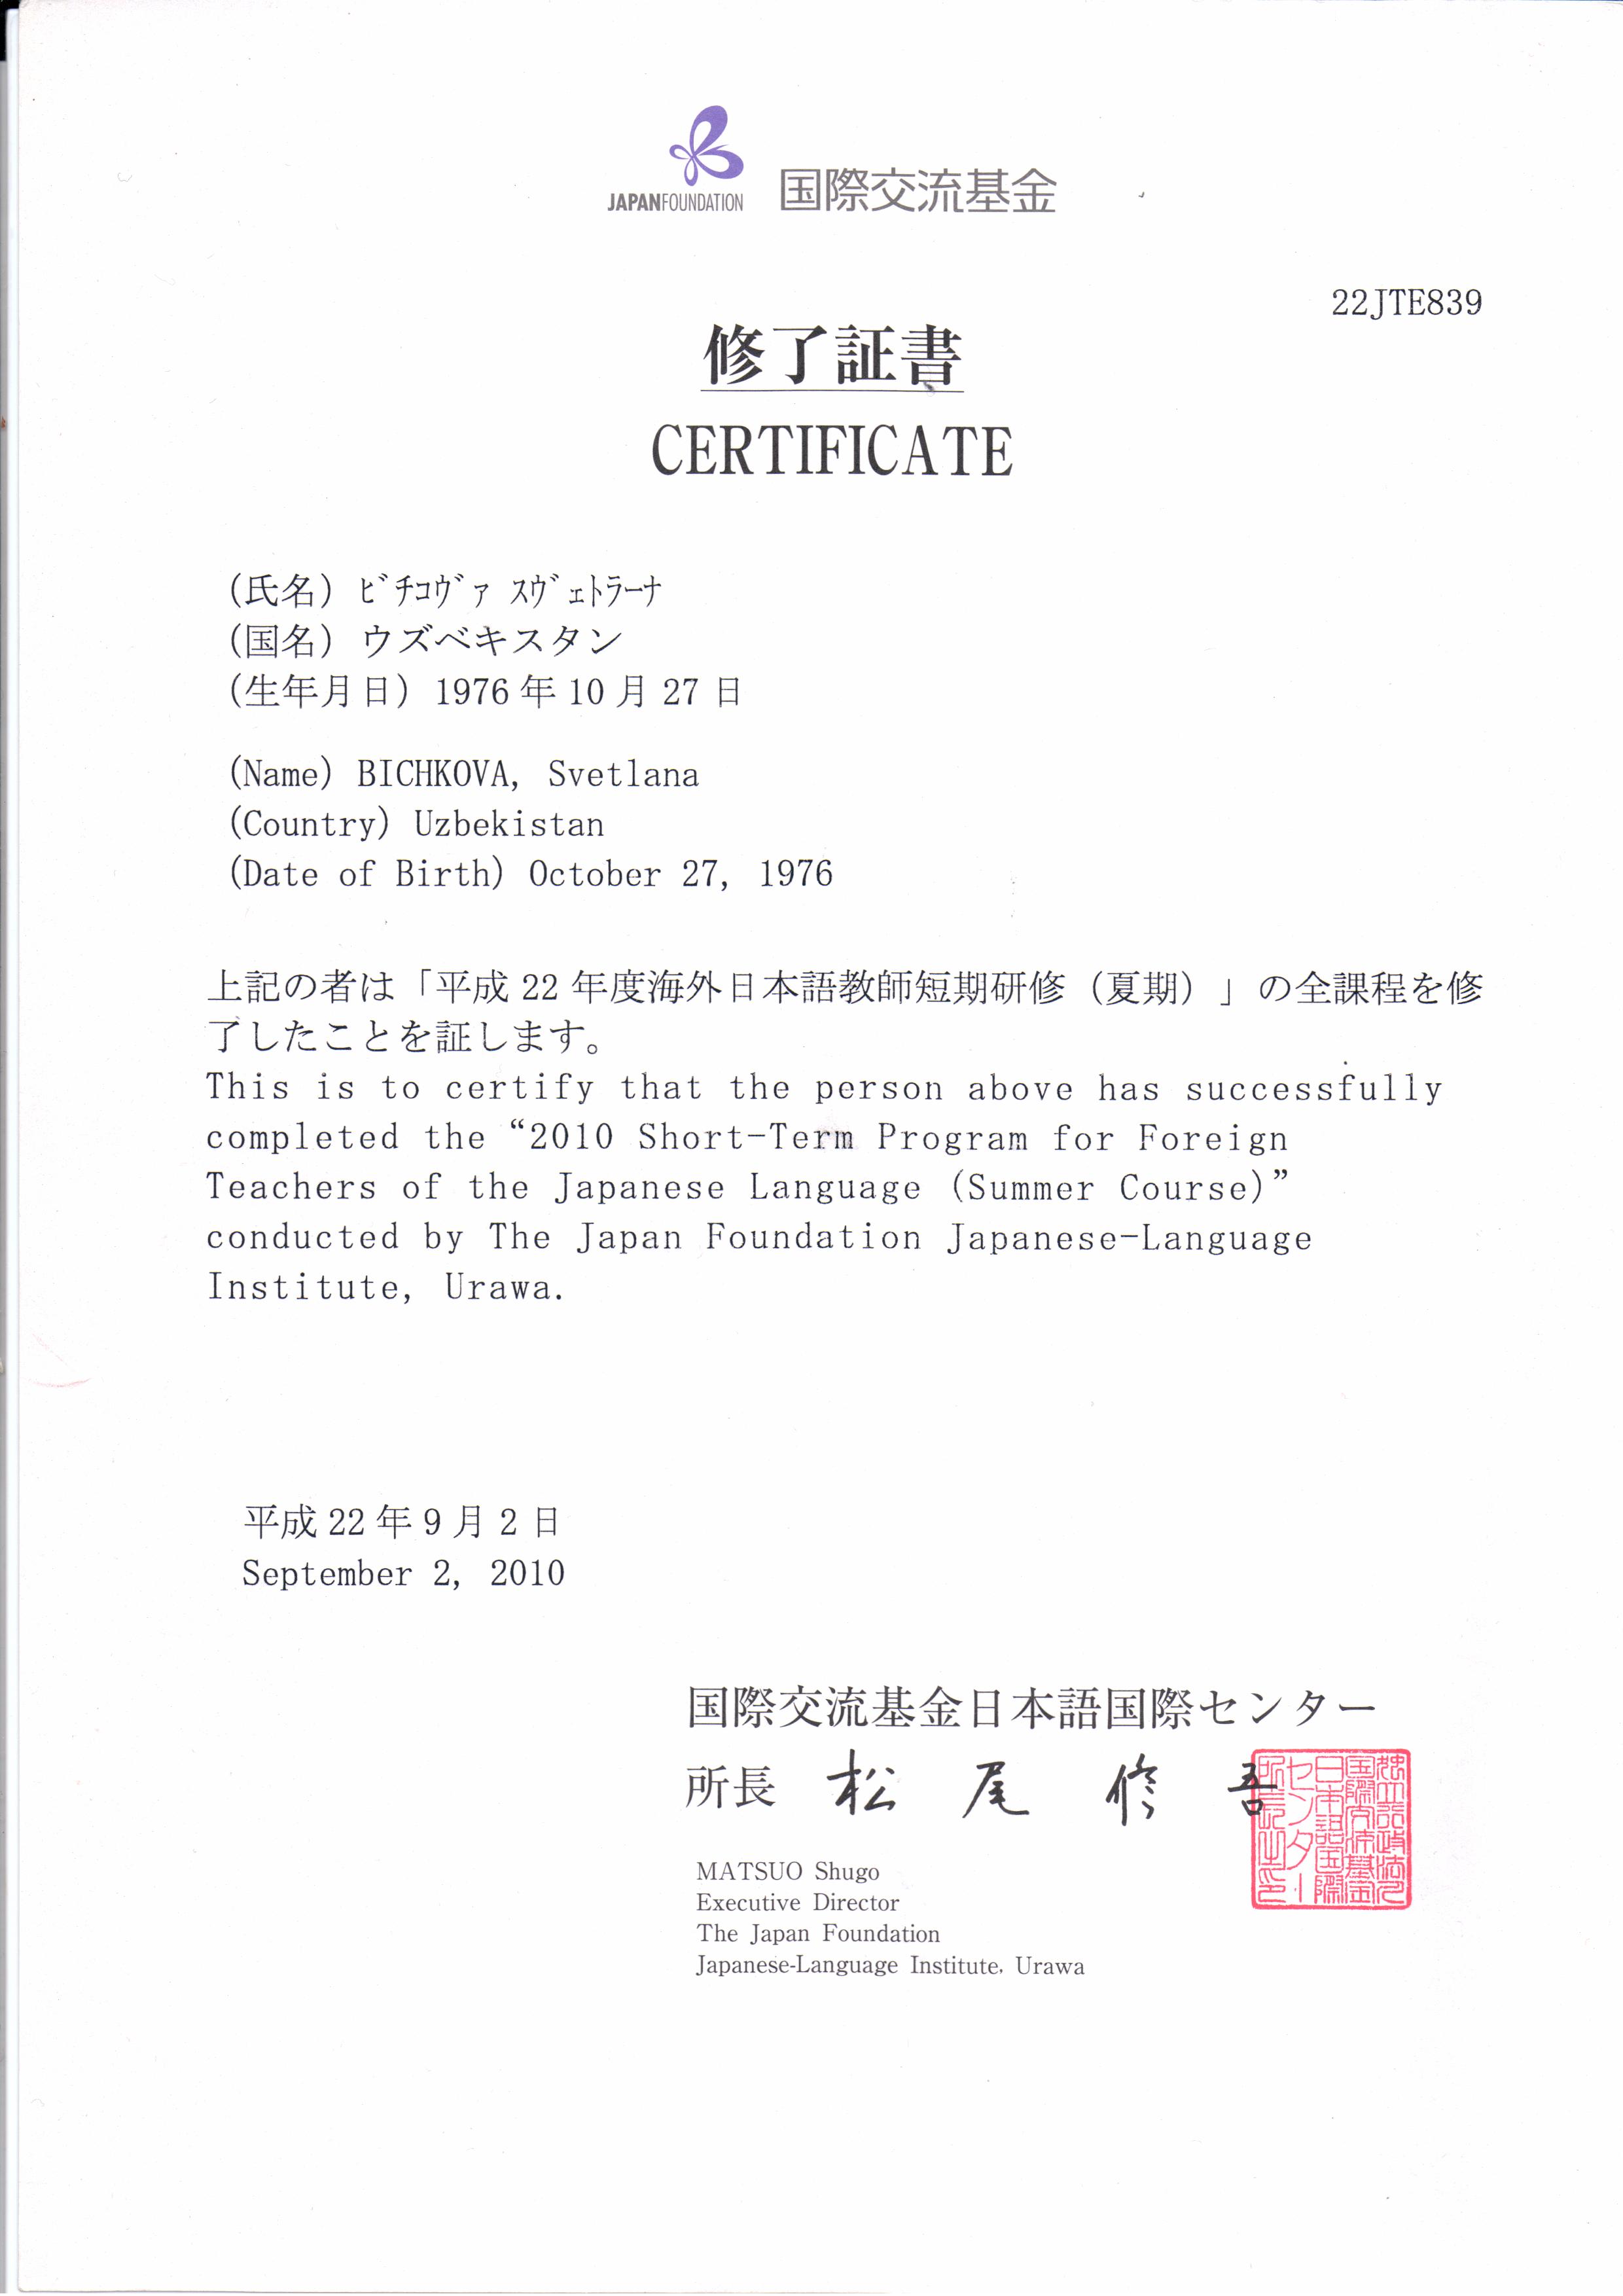 Сертификат Стажировка в Японии 2010 г